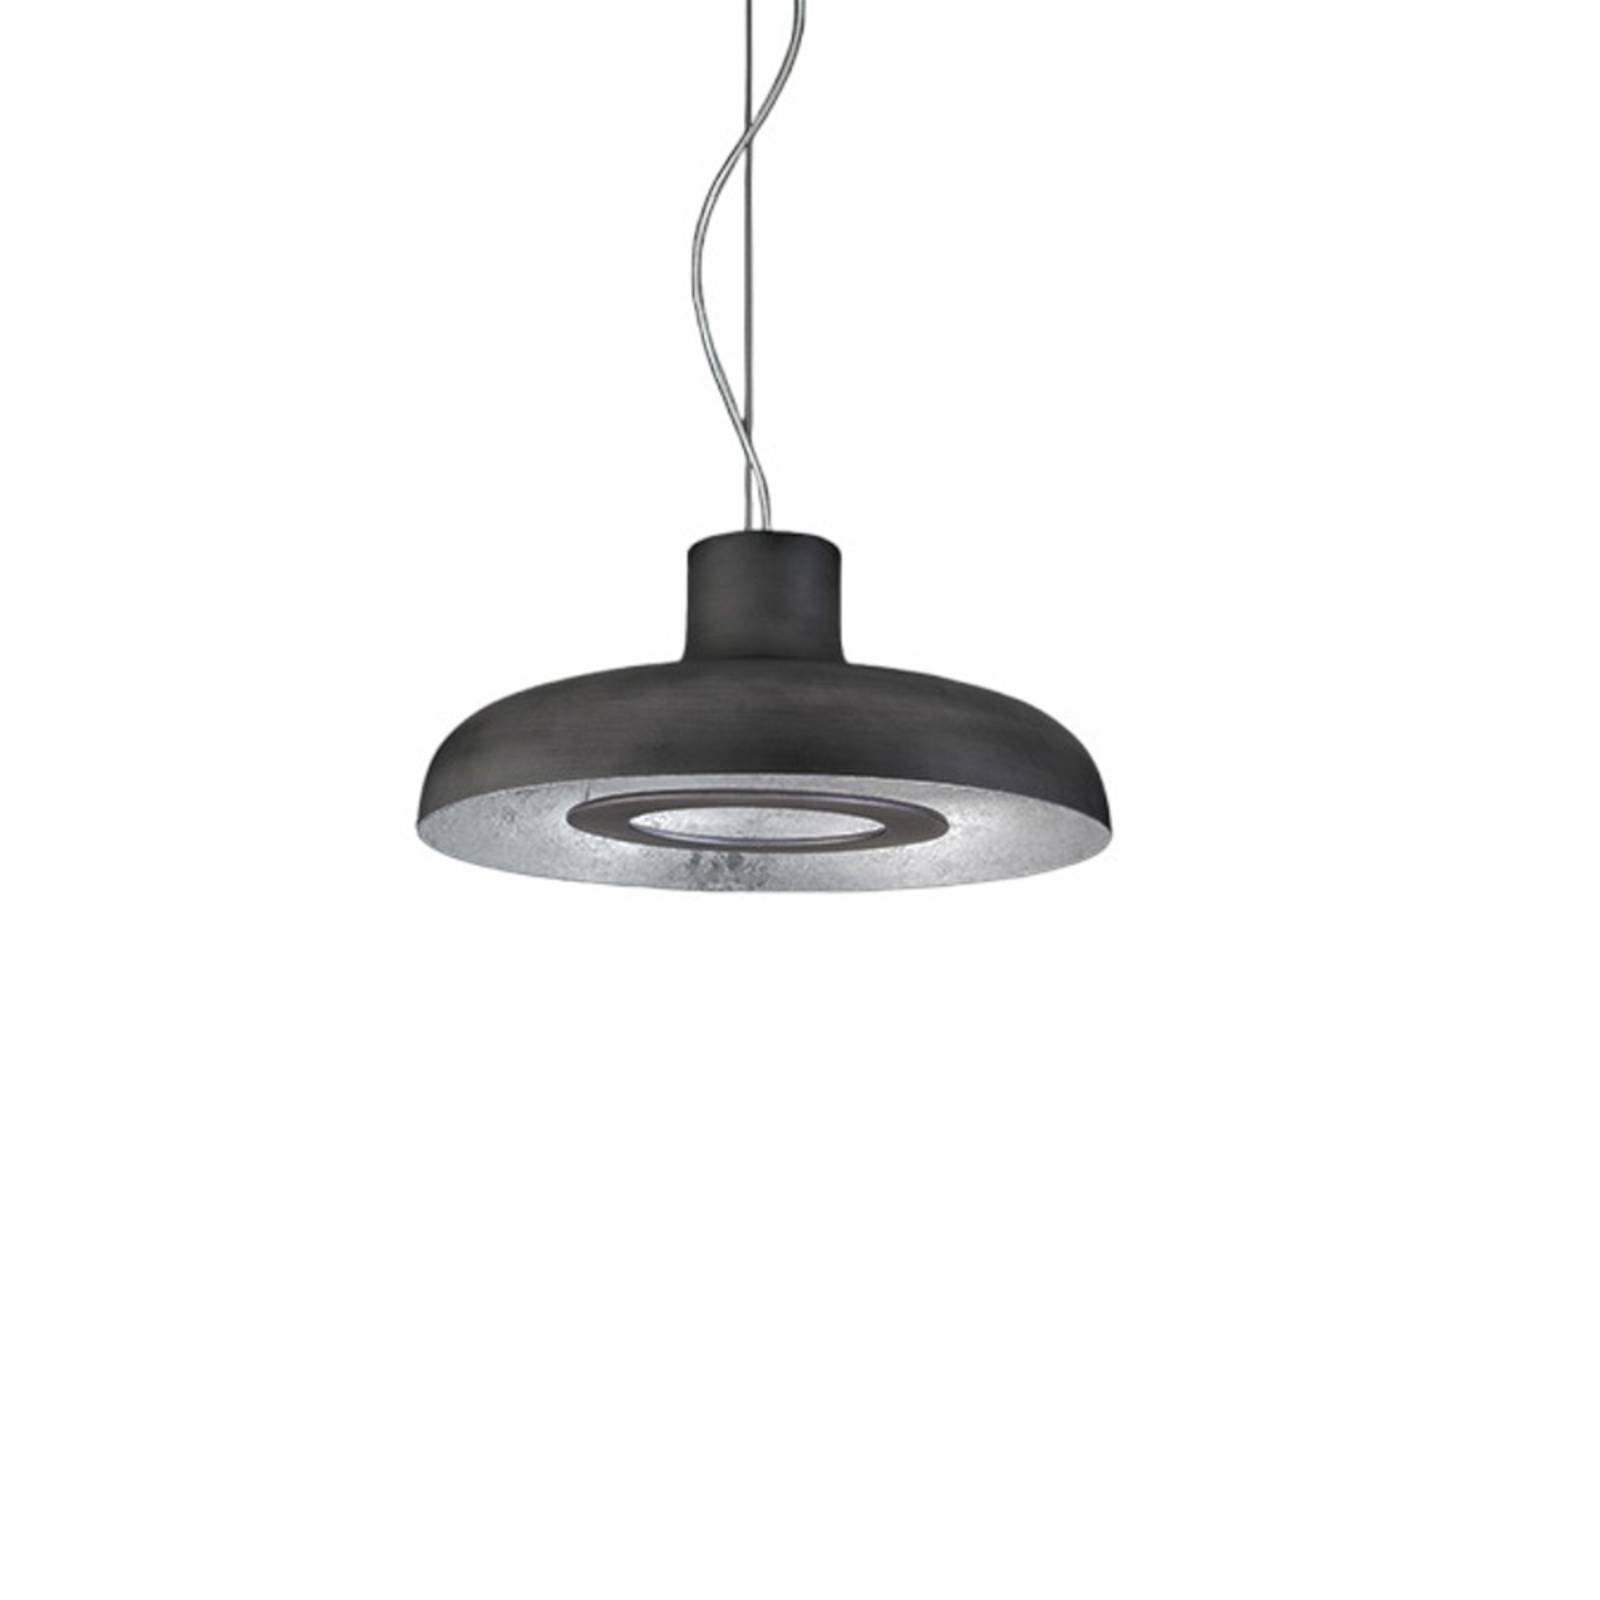 Levně ICONE Duetto LED závěsná lampa 927 Ø55cm železo/stříbro